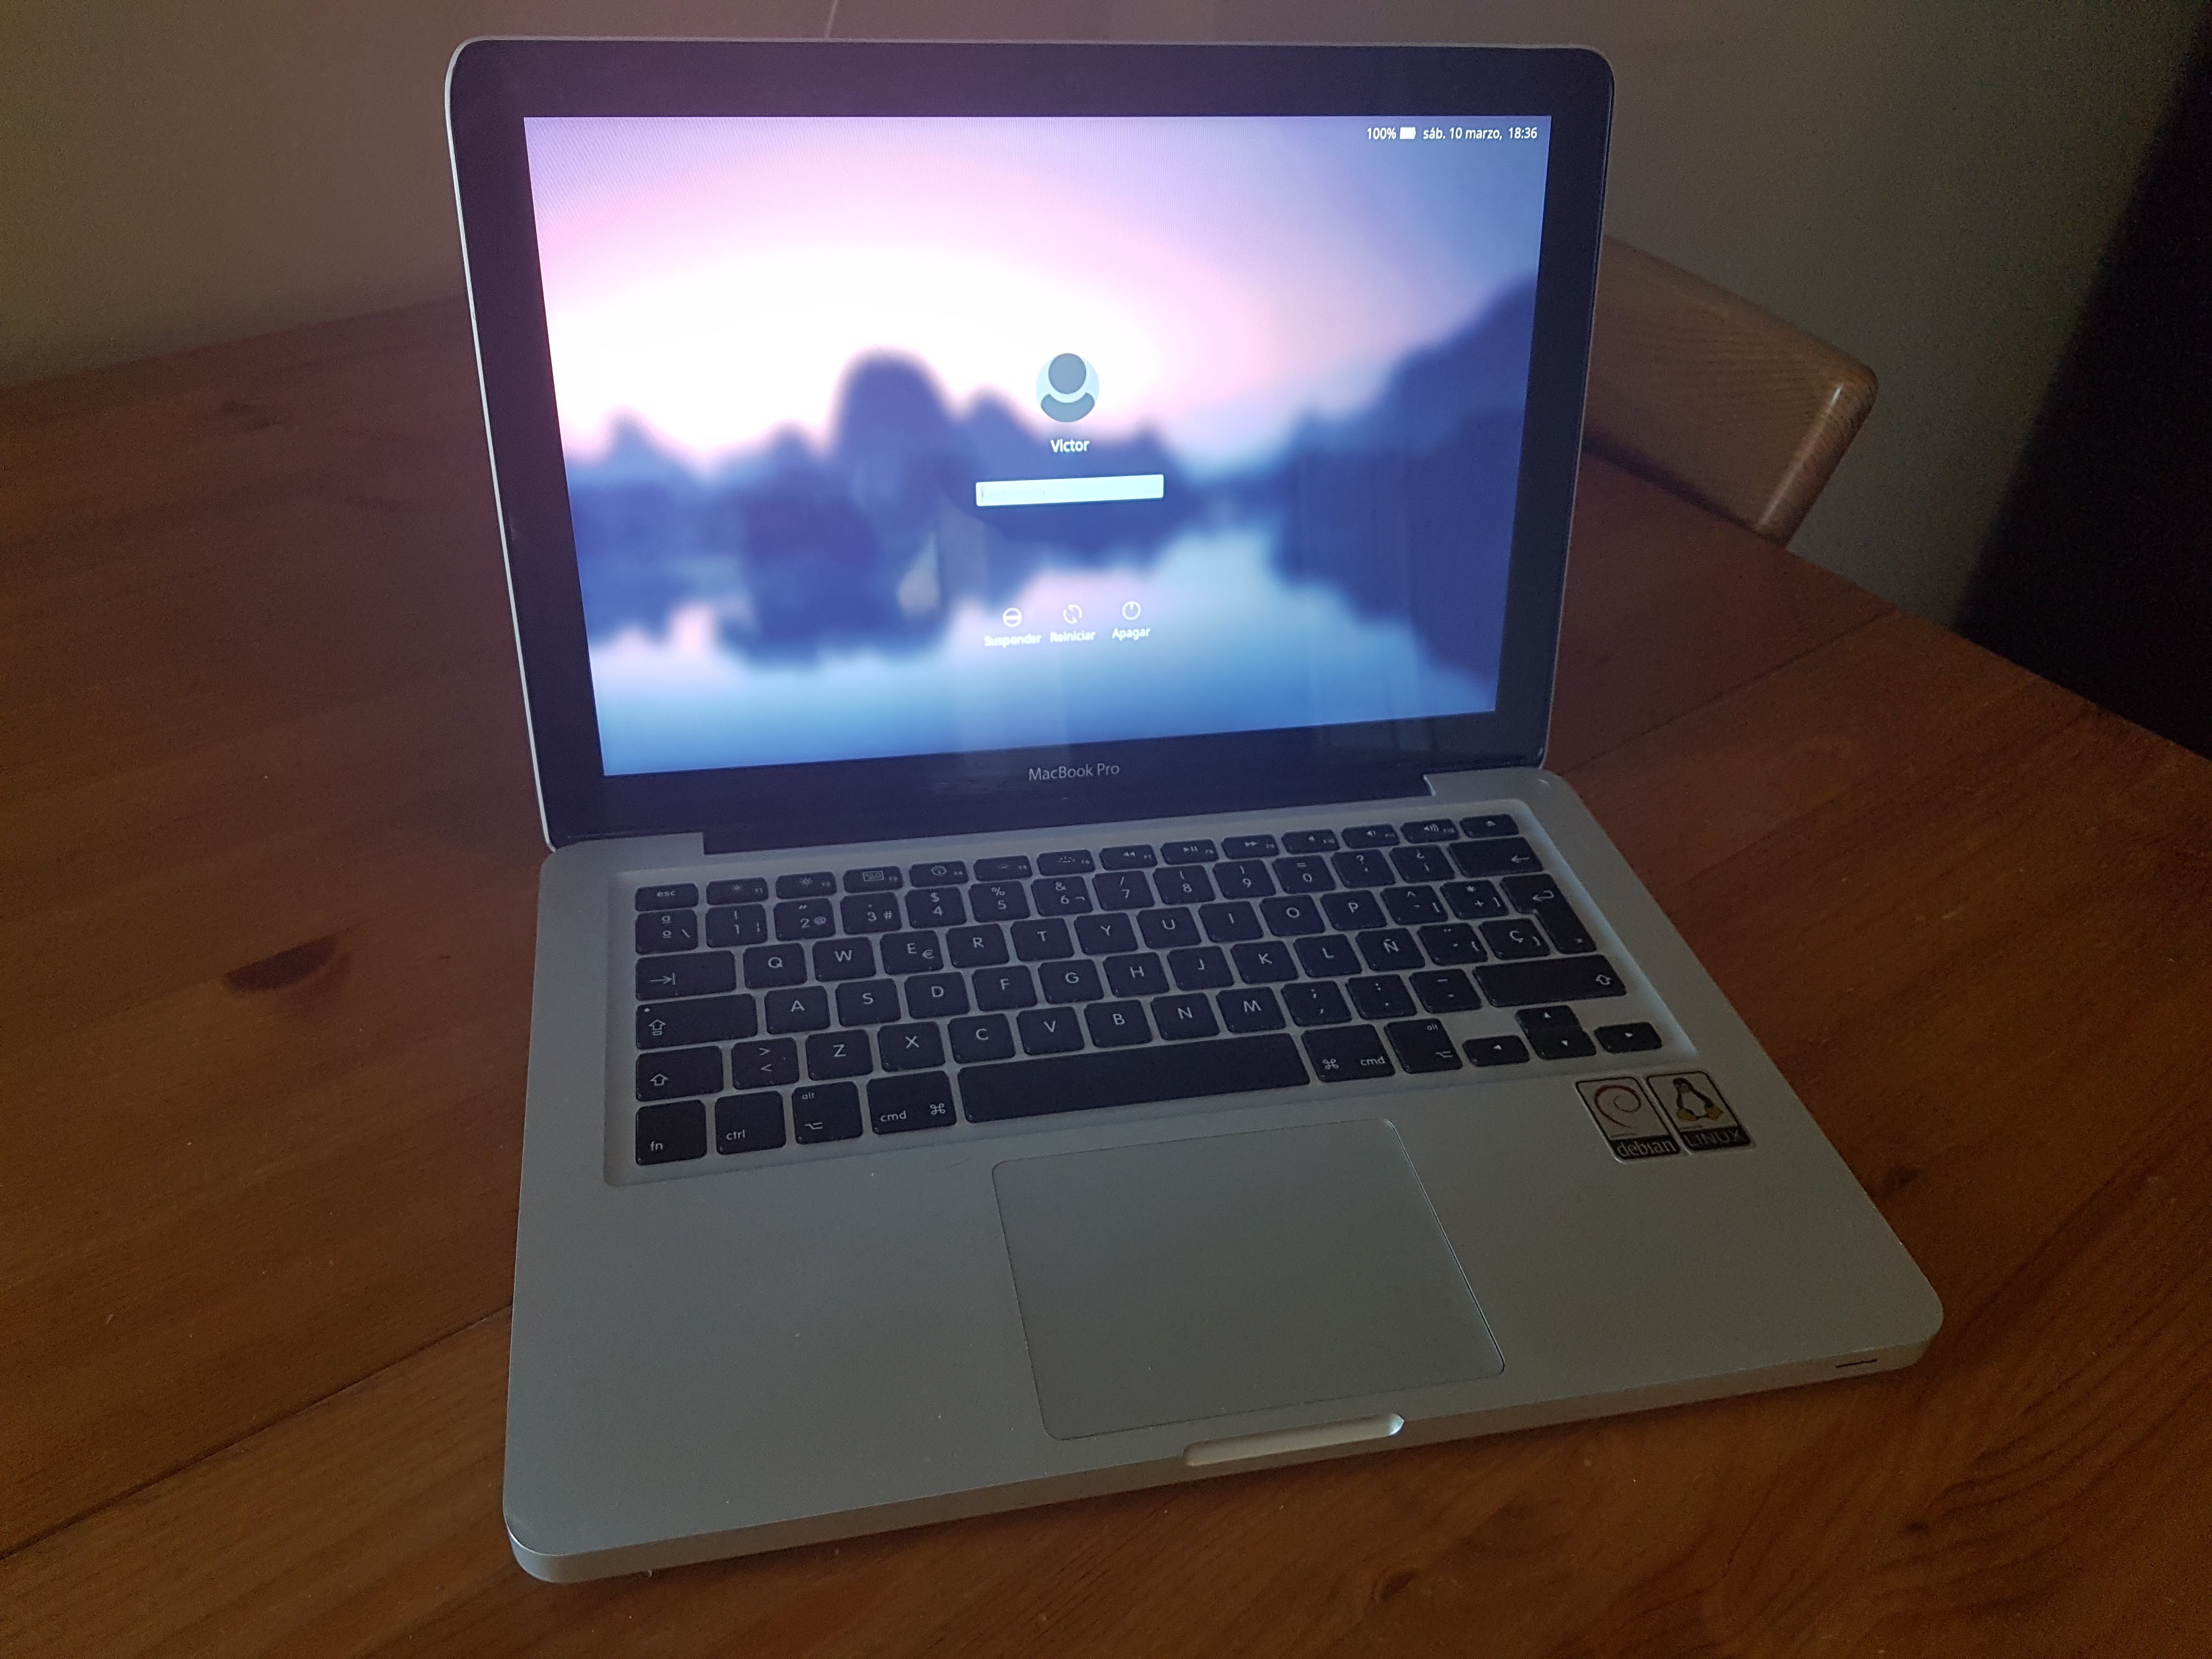 MacBook Pro Debian 9 Stretch